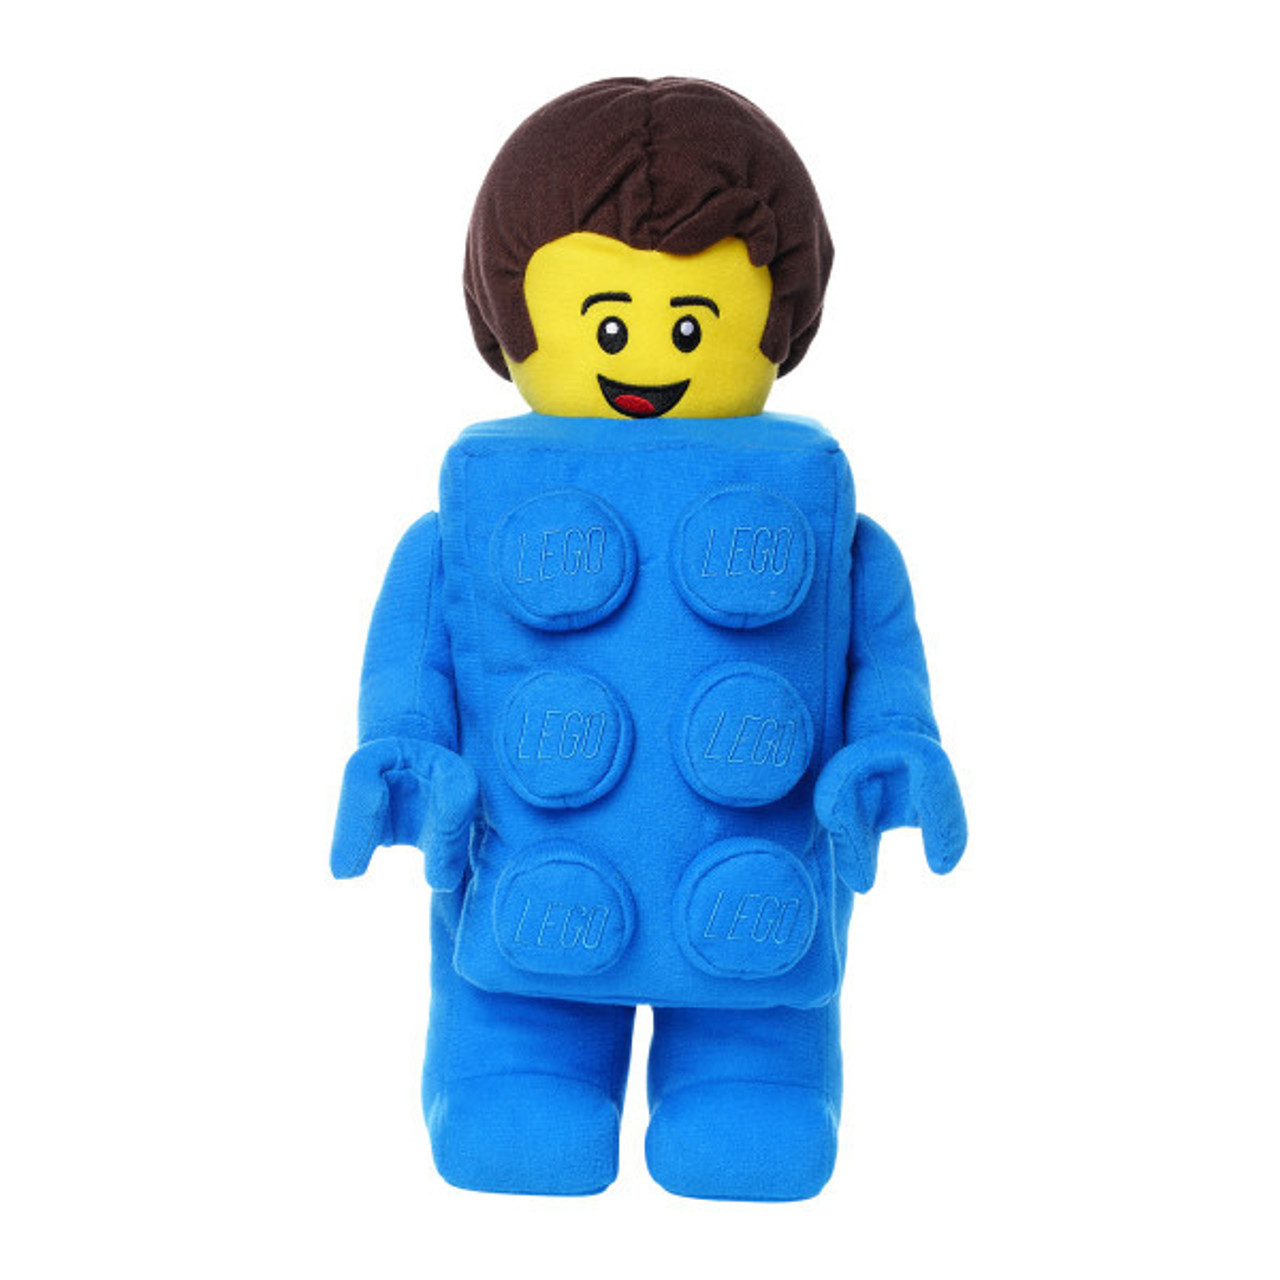 Lego Brick Suit Boy Plush, 33cm  EAN 513338